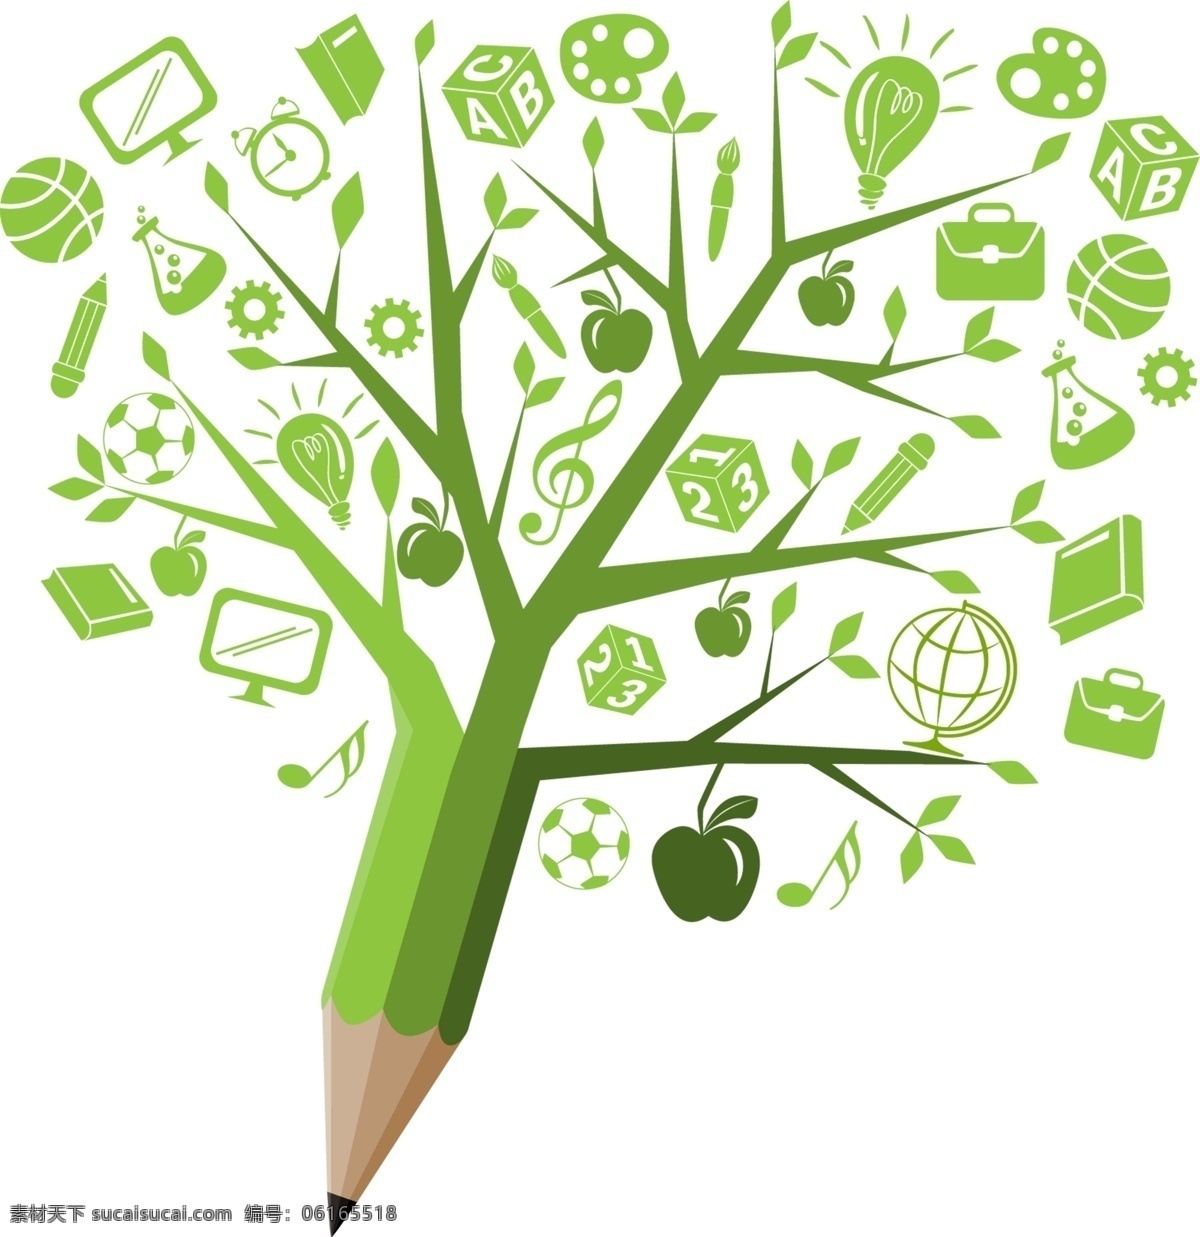 绿色 科技 知识 创意 铅笔 树 装饰 图标 元素 商务 商业 矢量